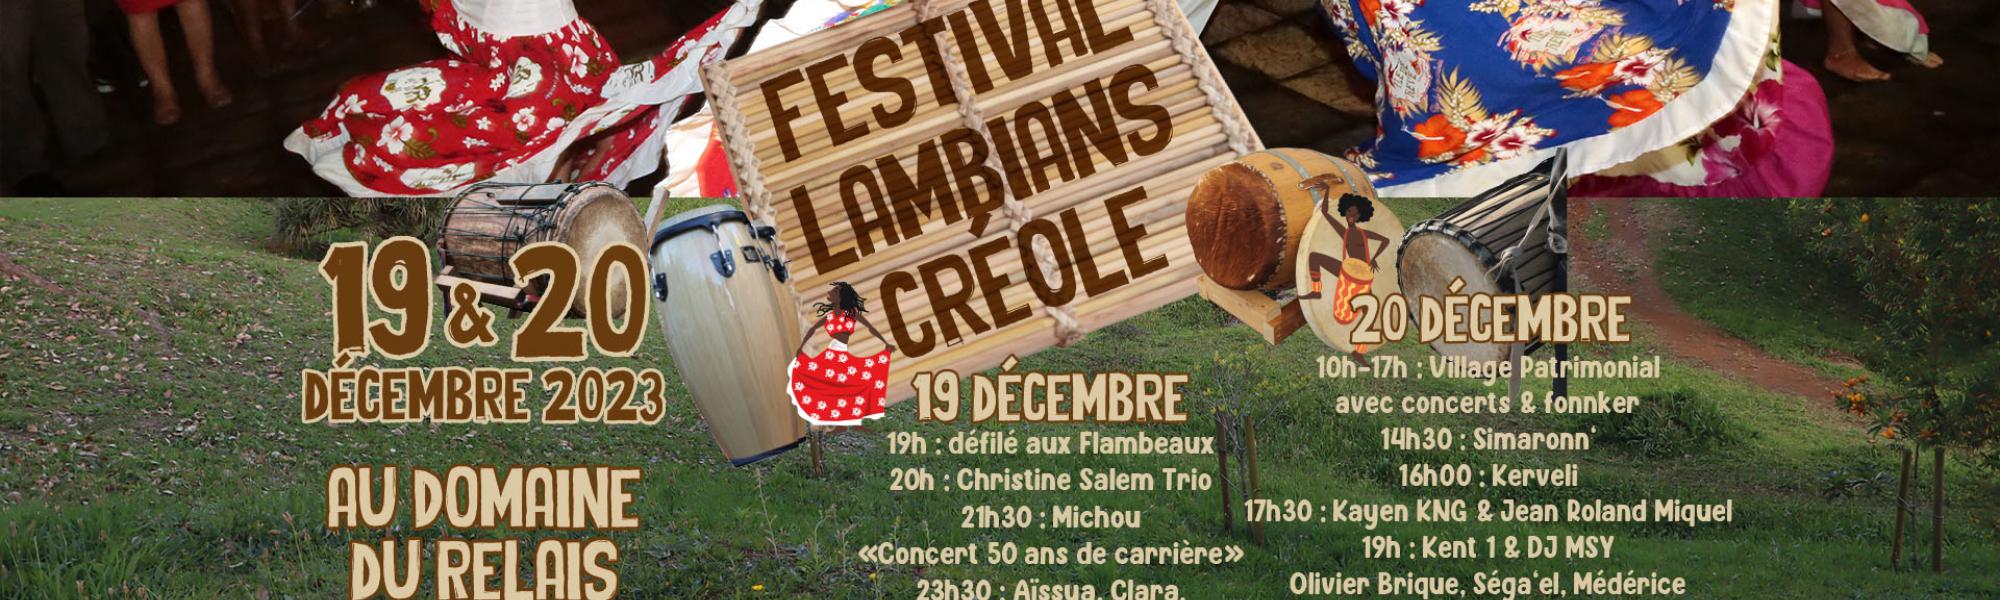 Festival lambians créole le 19 et 20 décembre